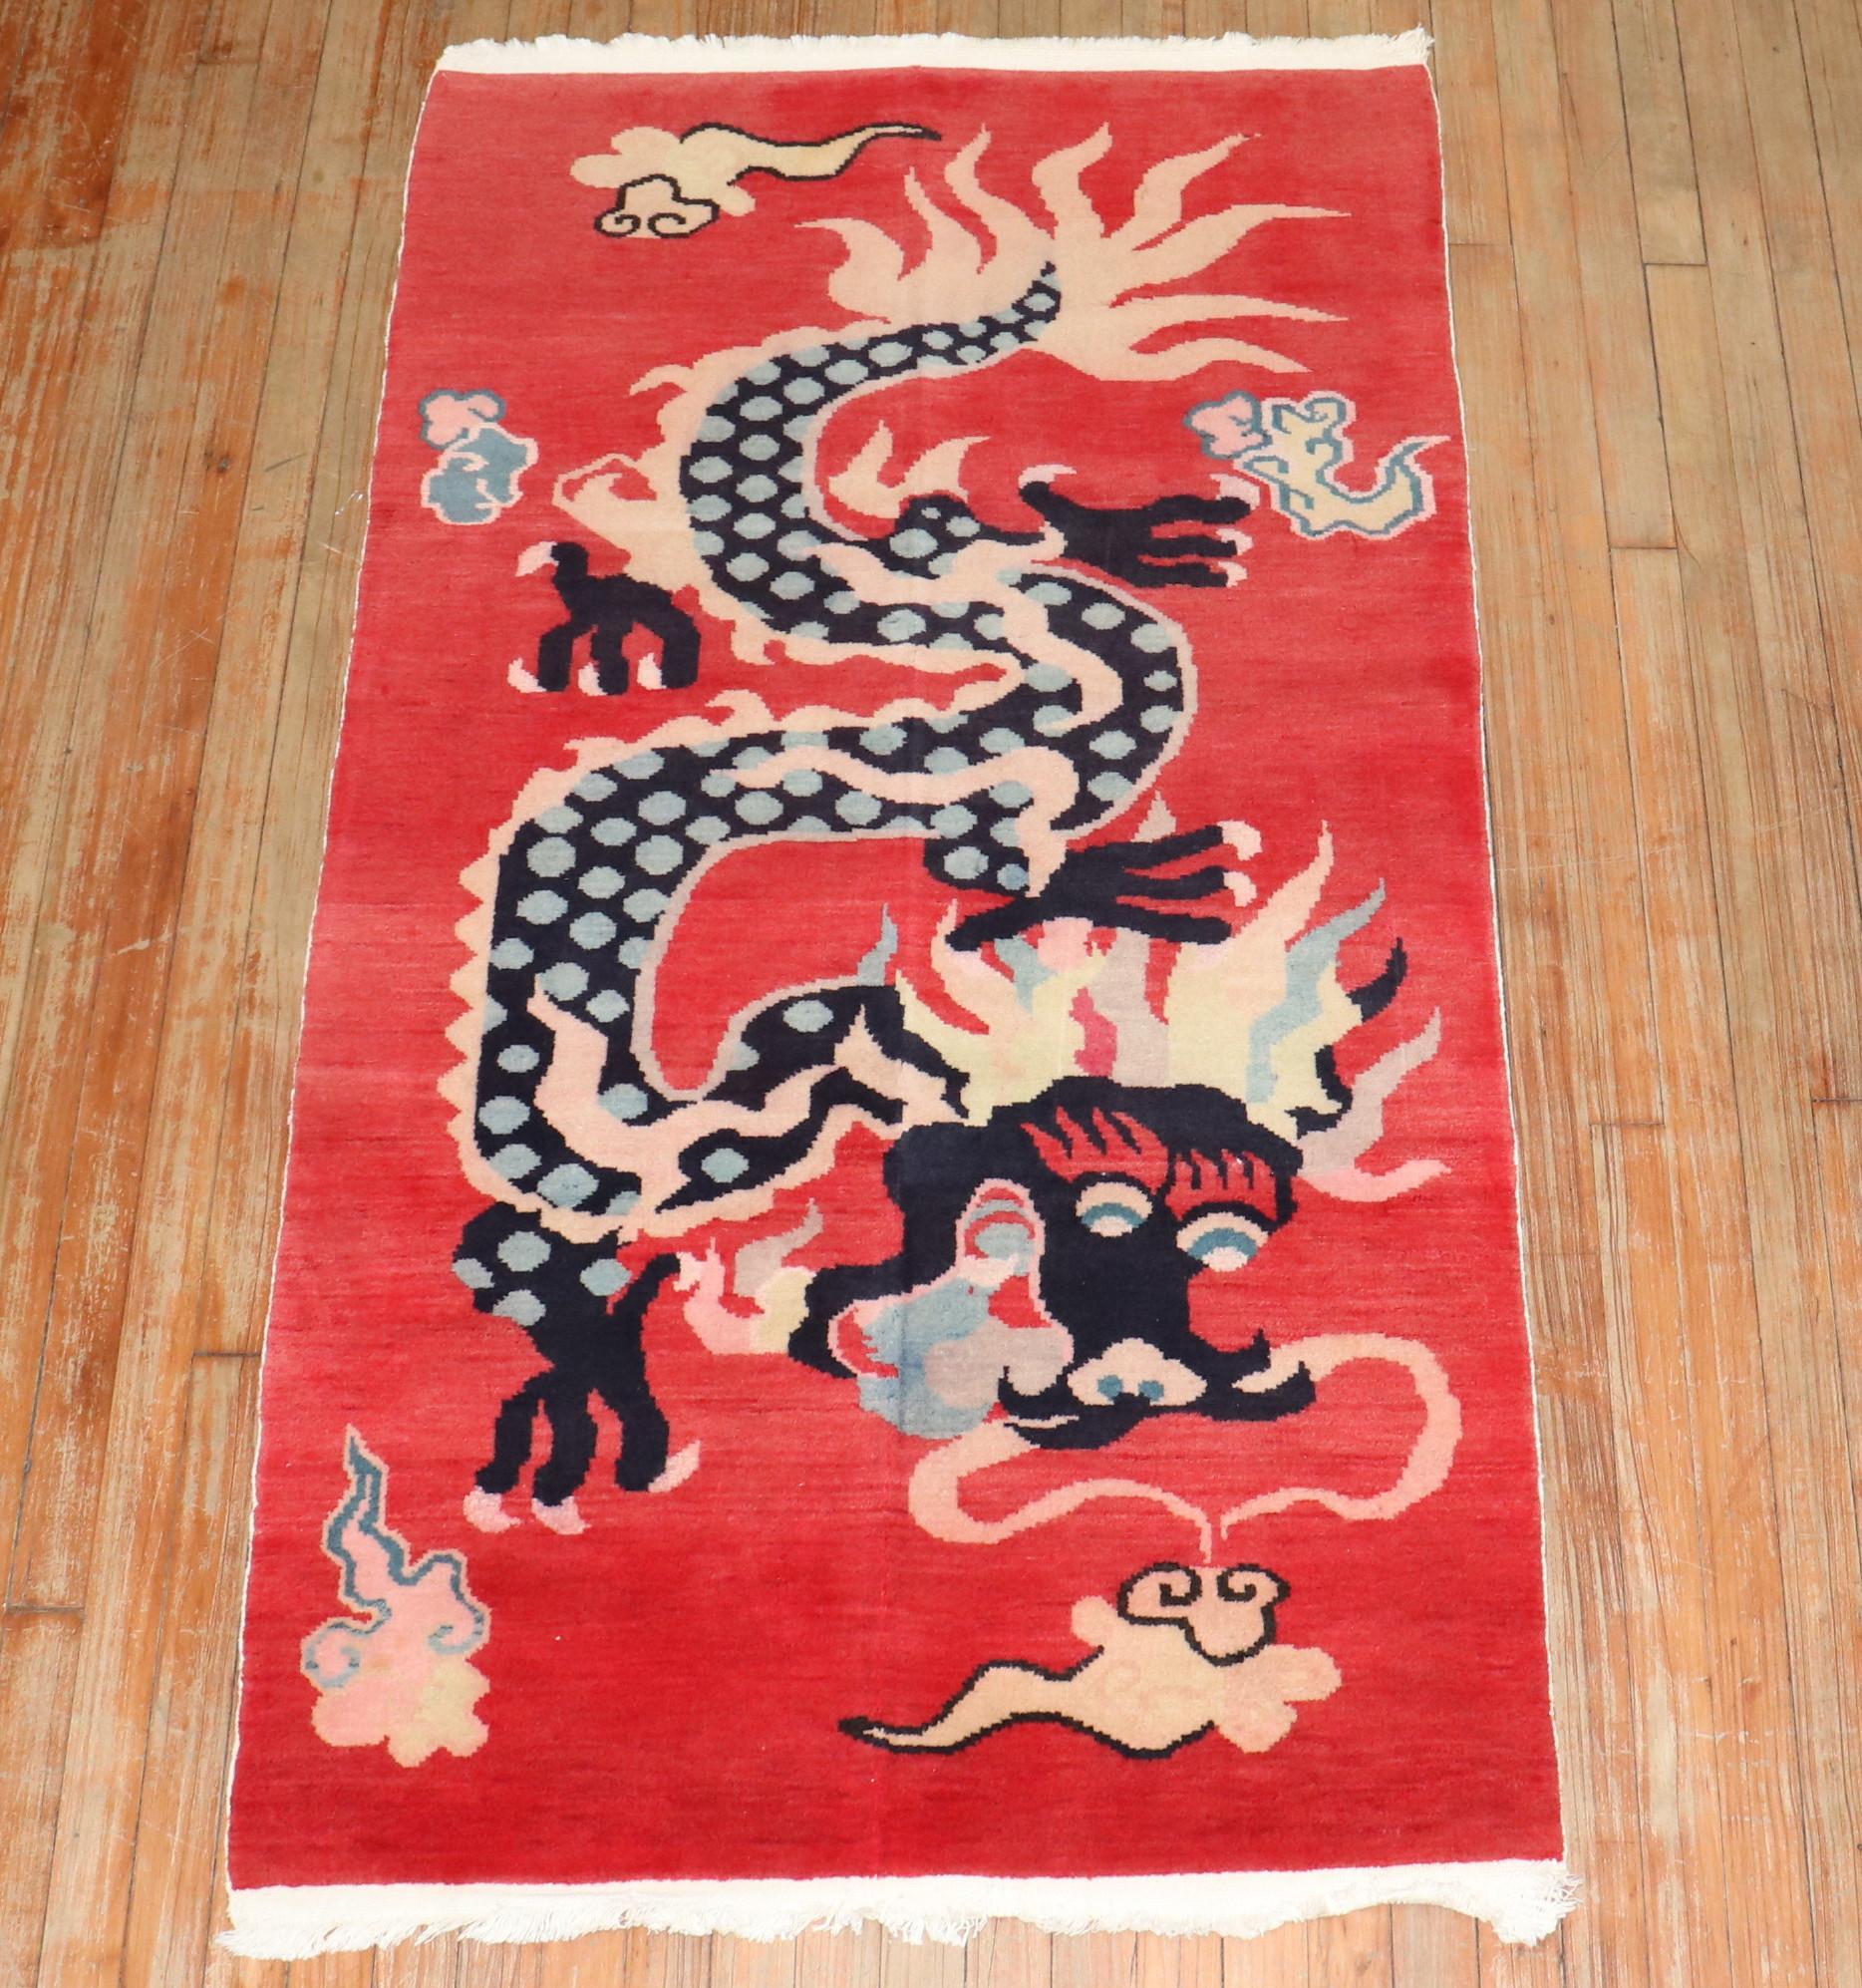 Ein farbenfroher, einzigartiger tibetischer Teppich aus dem 3. Quartal des 20. Jahrhunderts mit einem Drachenmotiv auf rotem Grund

Maße: 3' x 5'7''.